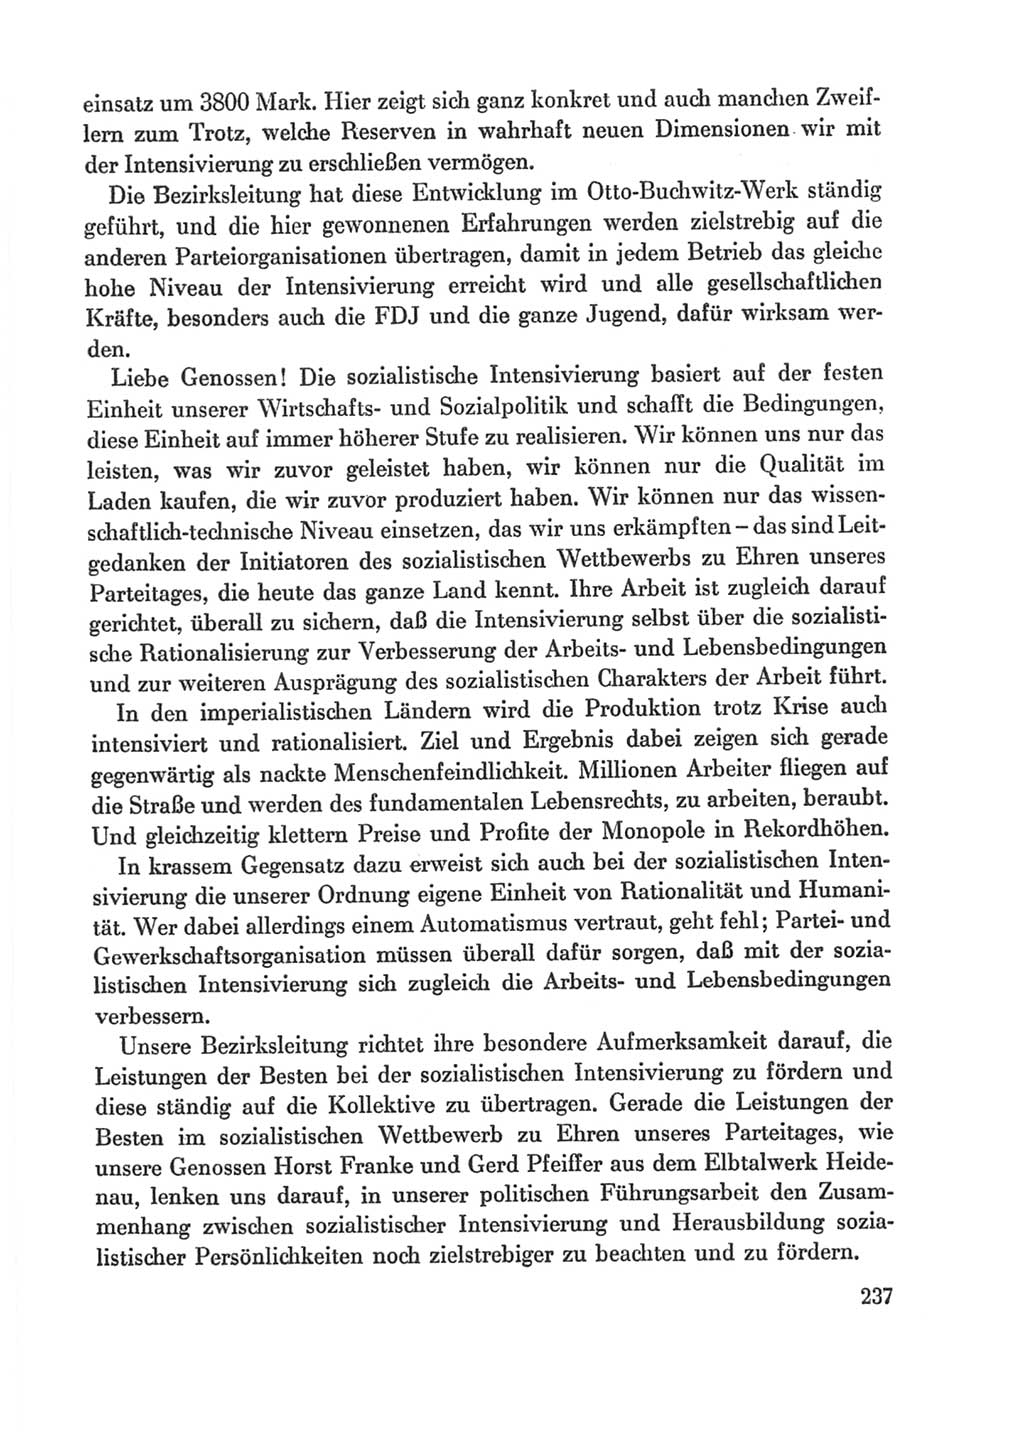 Protokoll der Verhandlungen des Ⅸ. Parteitages der Sozialistischen Einheitspartei Deutschlands (SED) [Deutsche Demokratische Republik (DDR)] 1976, Band 1, Seite 237 (Prot. Verh. Ⅸ. PT SED DDR 1976, Bd. 1, S. 237)